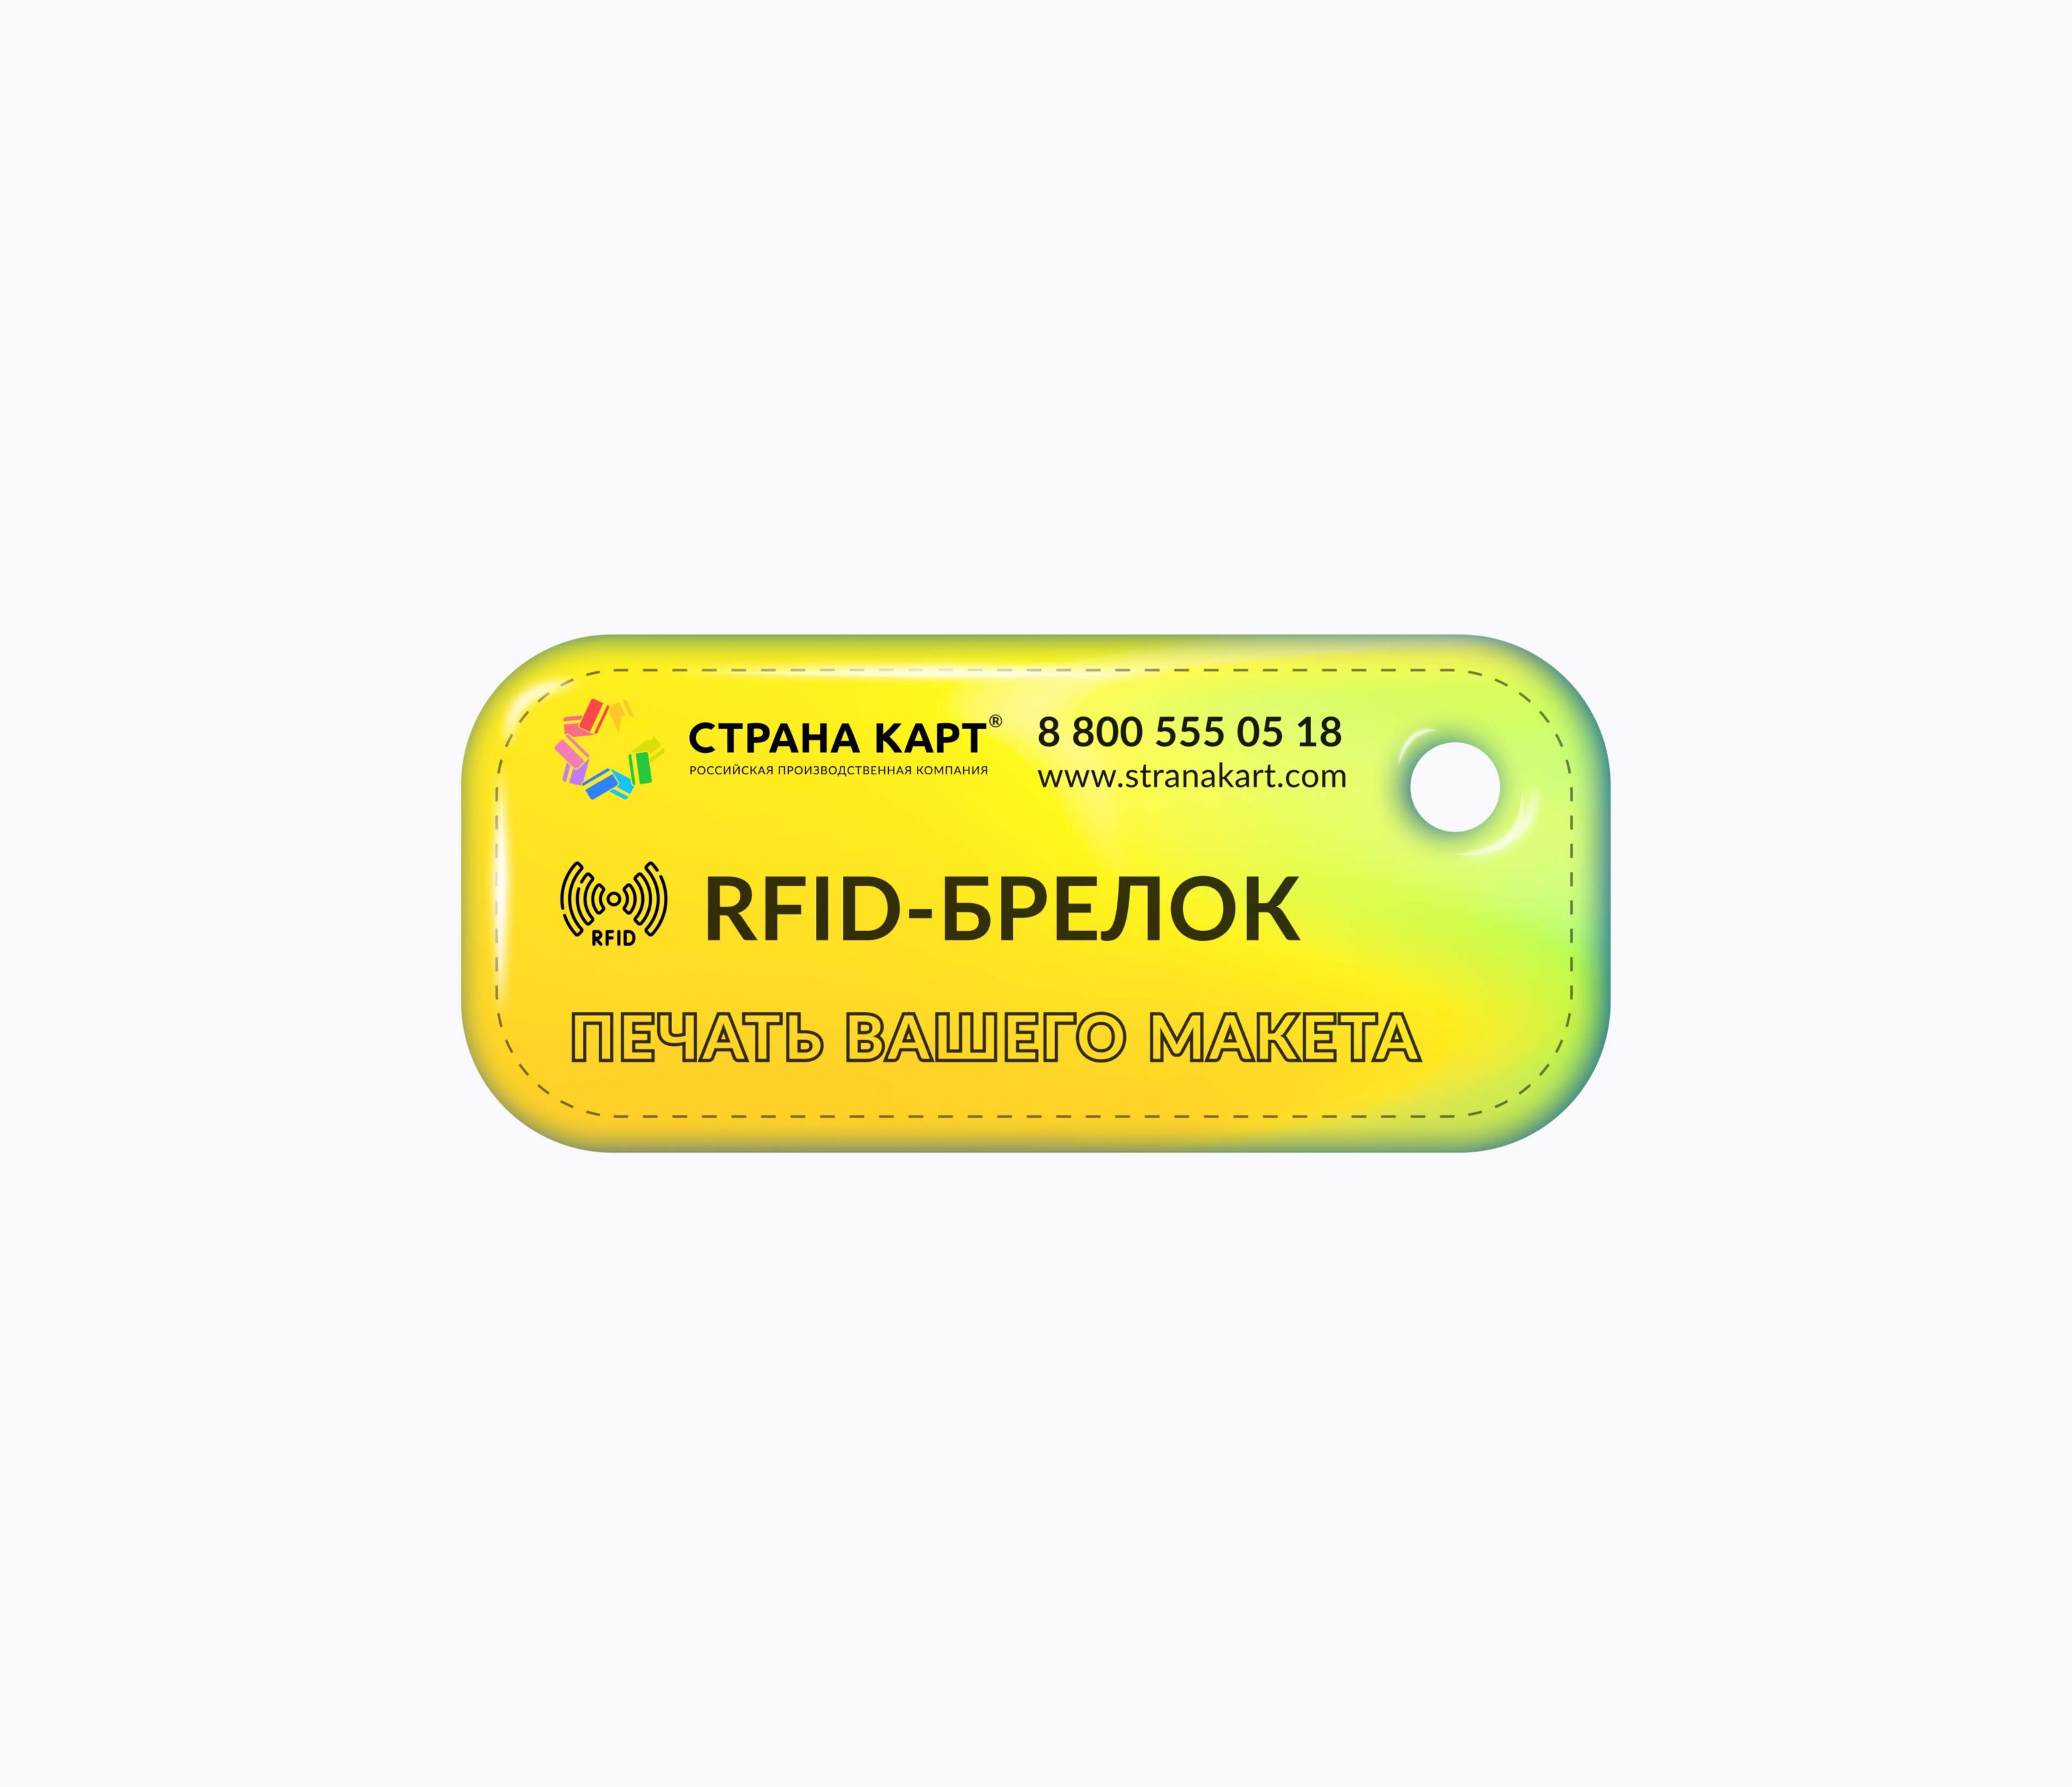 Прямоугольные Мини RFID-брелоки NEOKEY® с чипом для оплаты школьного питания RFID-брелоки NEOKEY® с чипом для оплаты школьного питания